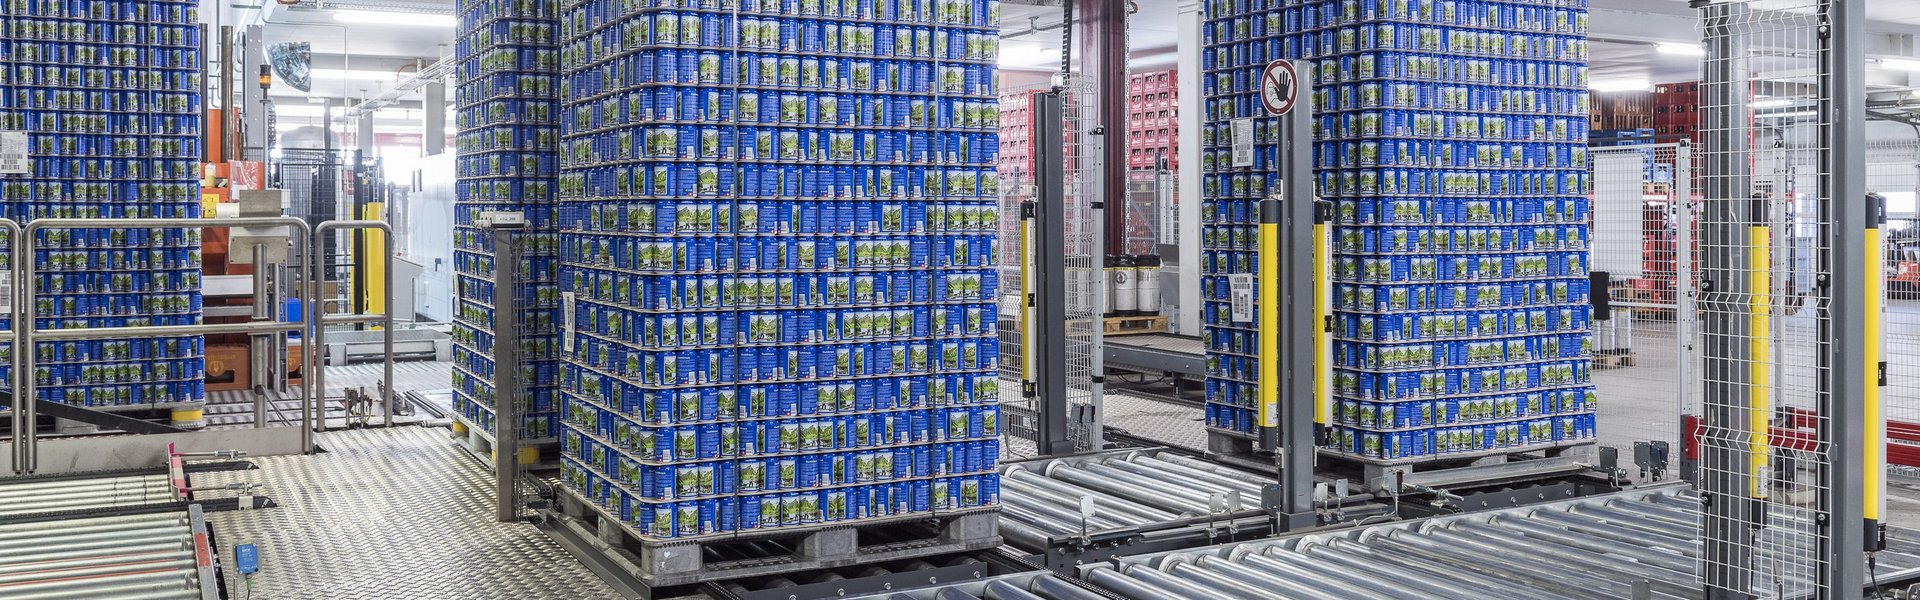 Hohe Ladeeinheiten aus Getränkedosen auf Paletten, transportiert auf automatischer Fördertechnik, Brauerei Locher AG Schweiz